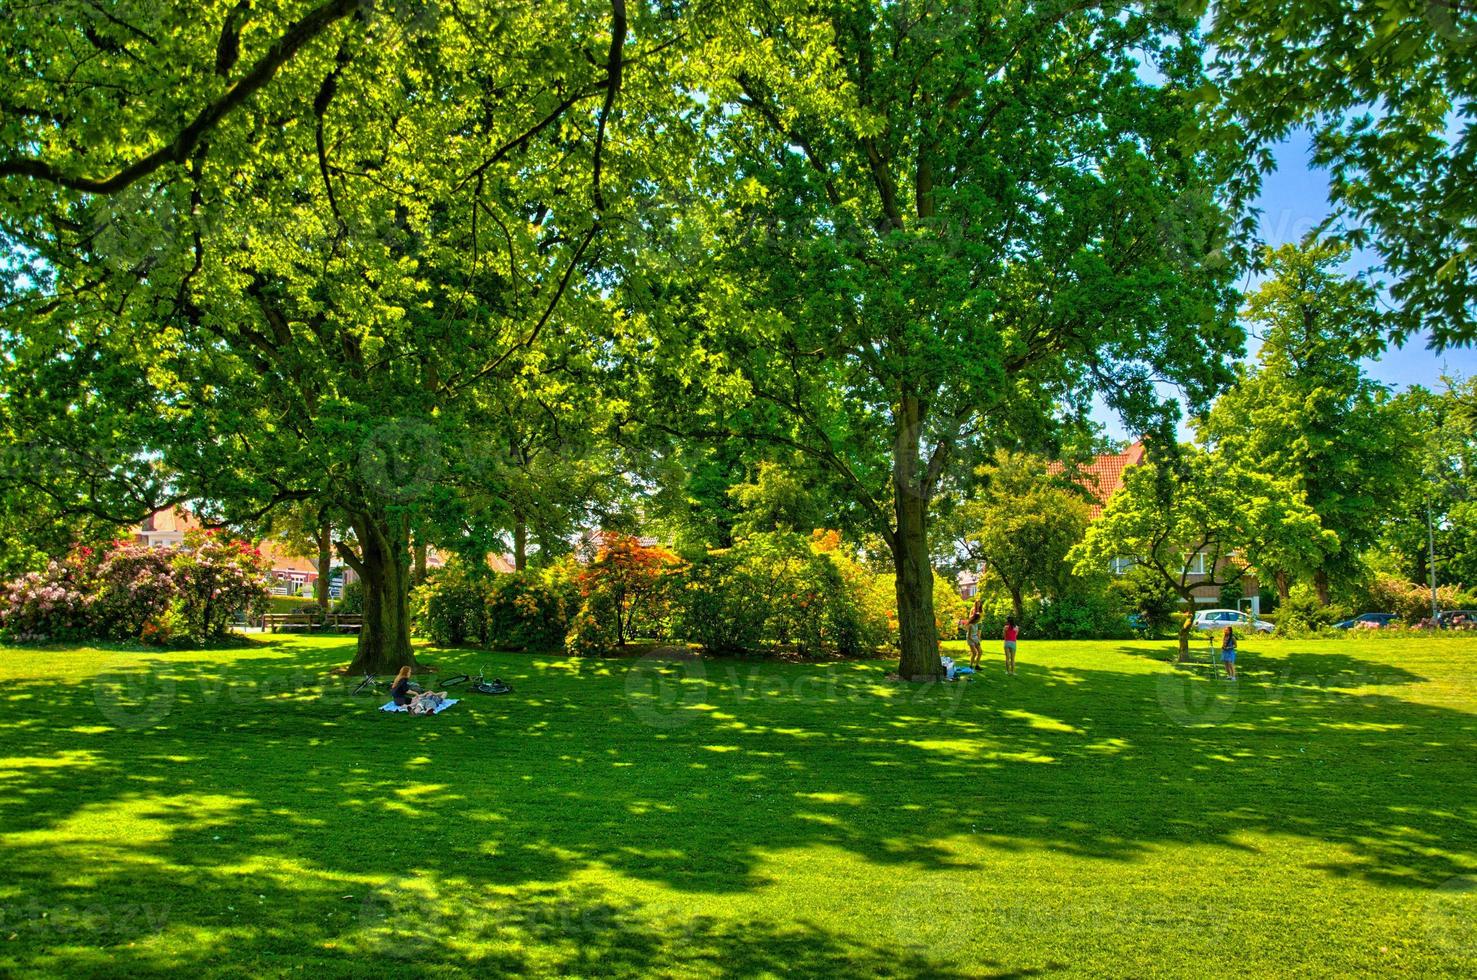 Herbe verte dans un parc ensoleillé à begren op zoom, Hollande, Pays-Bas photo